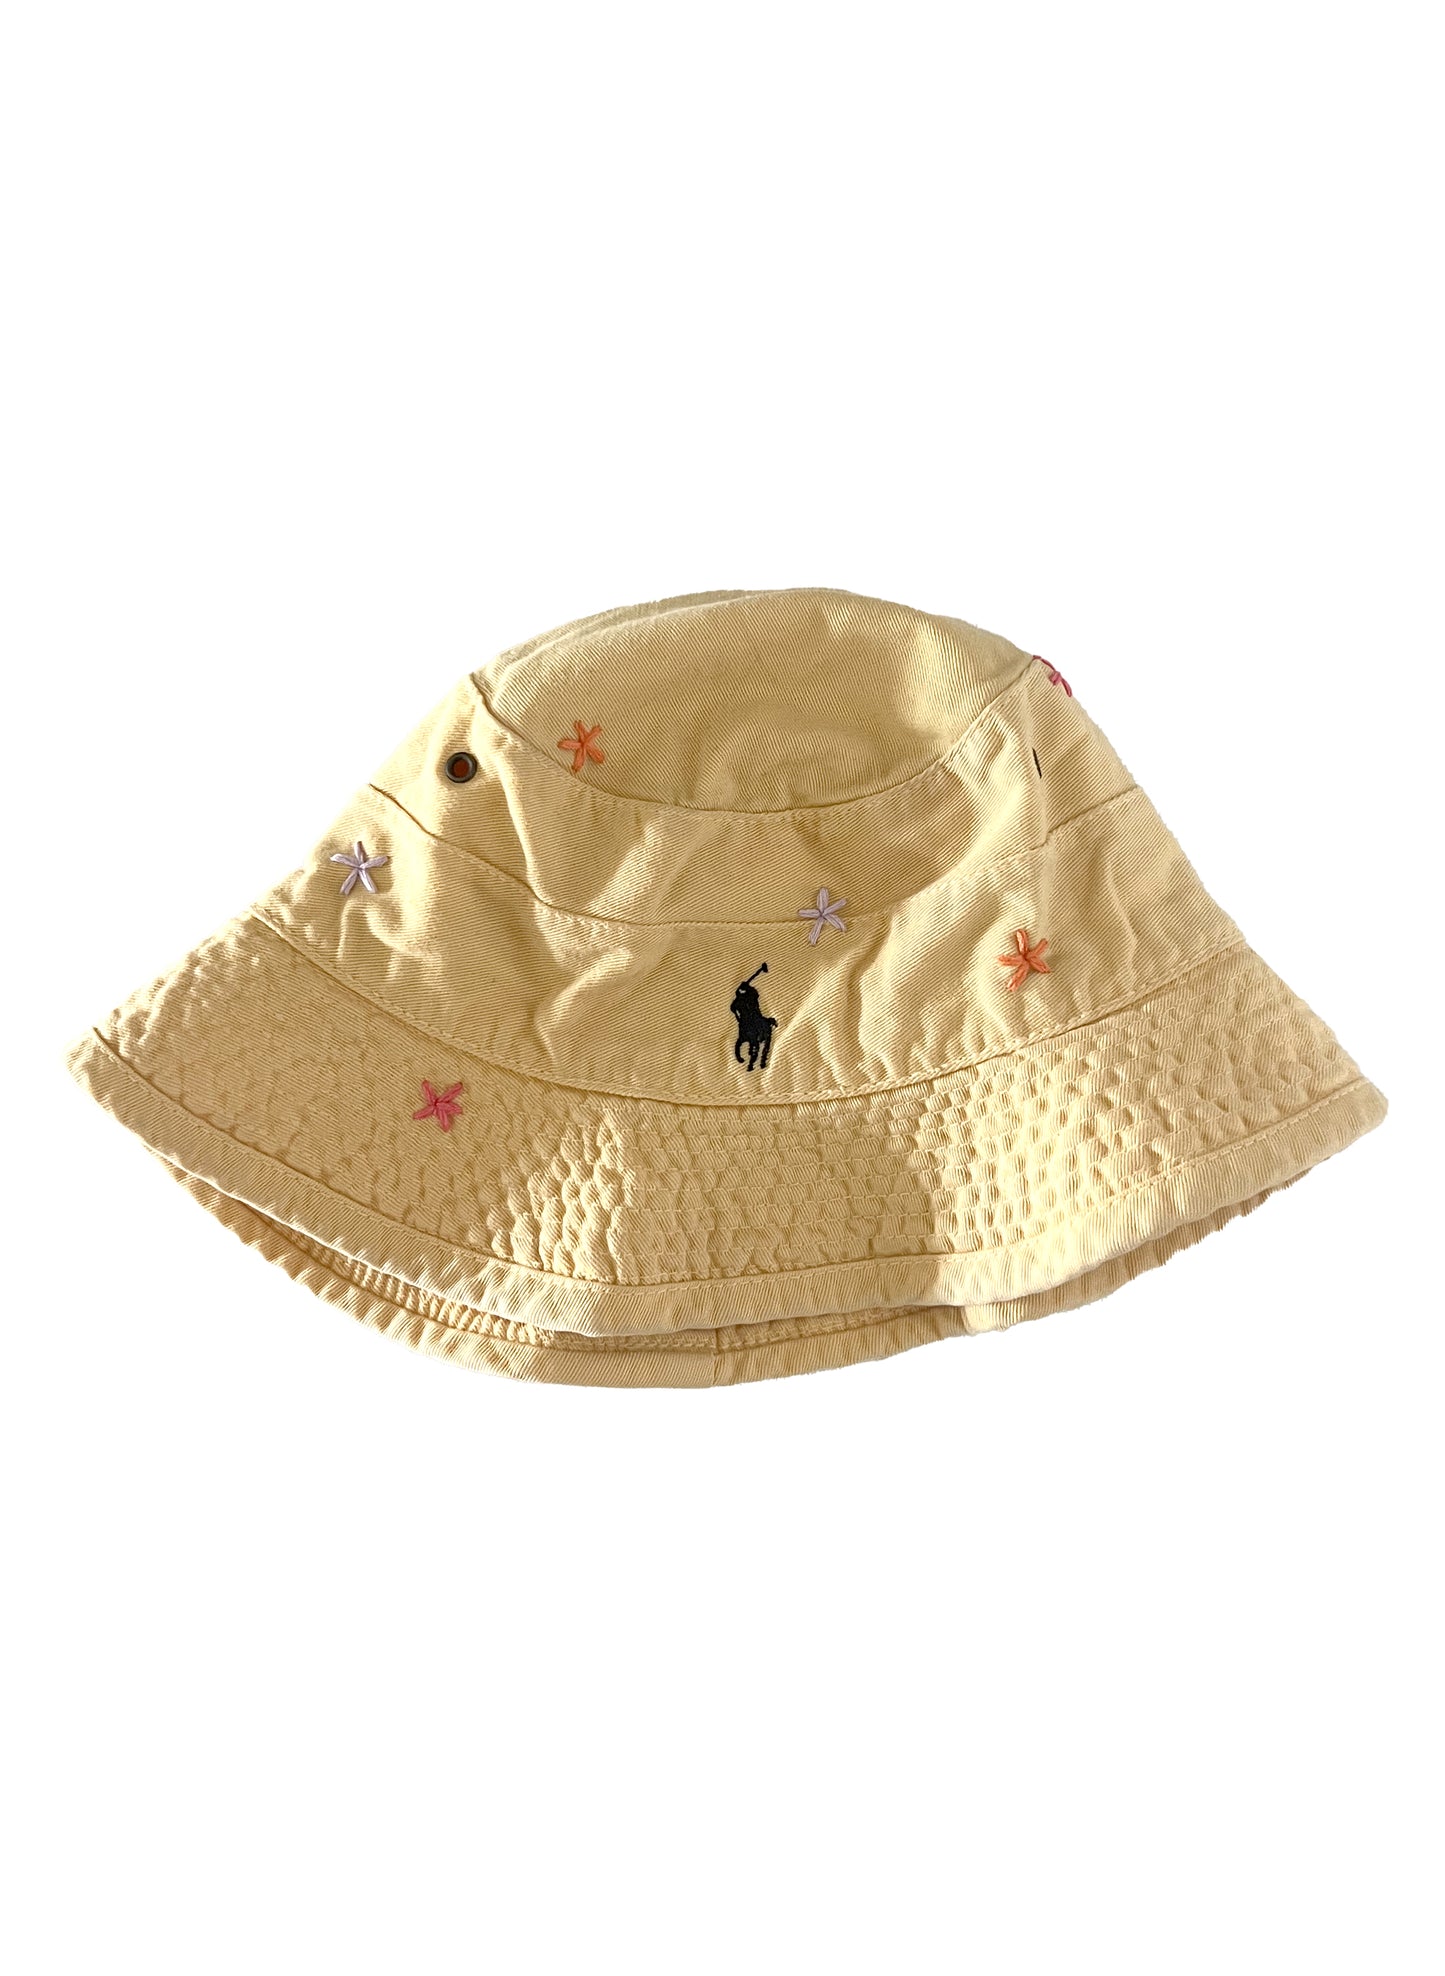 Ralph Lauren Polo Bucket Hat